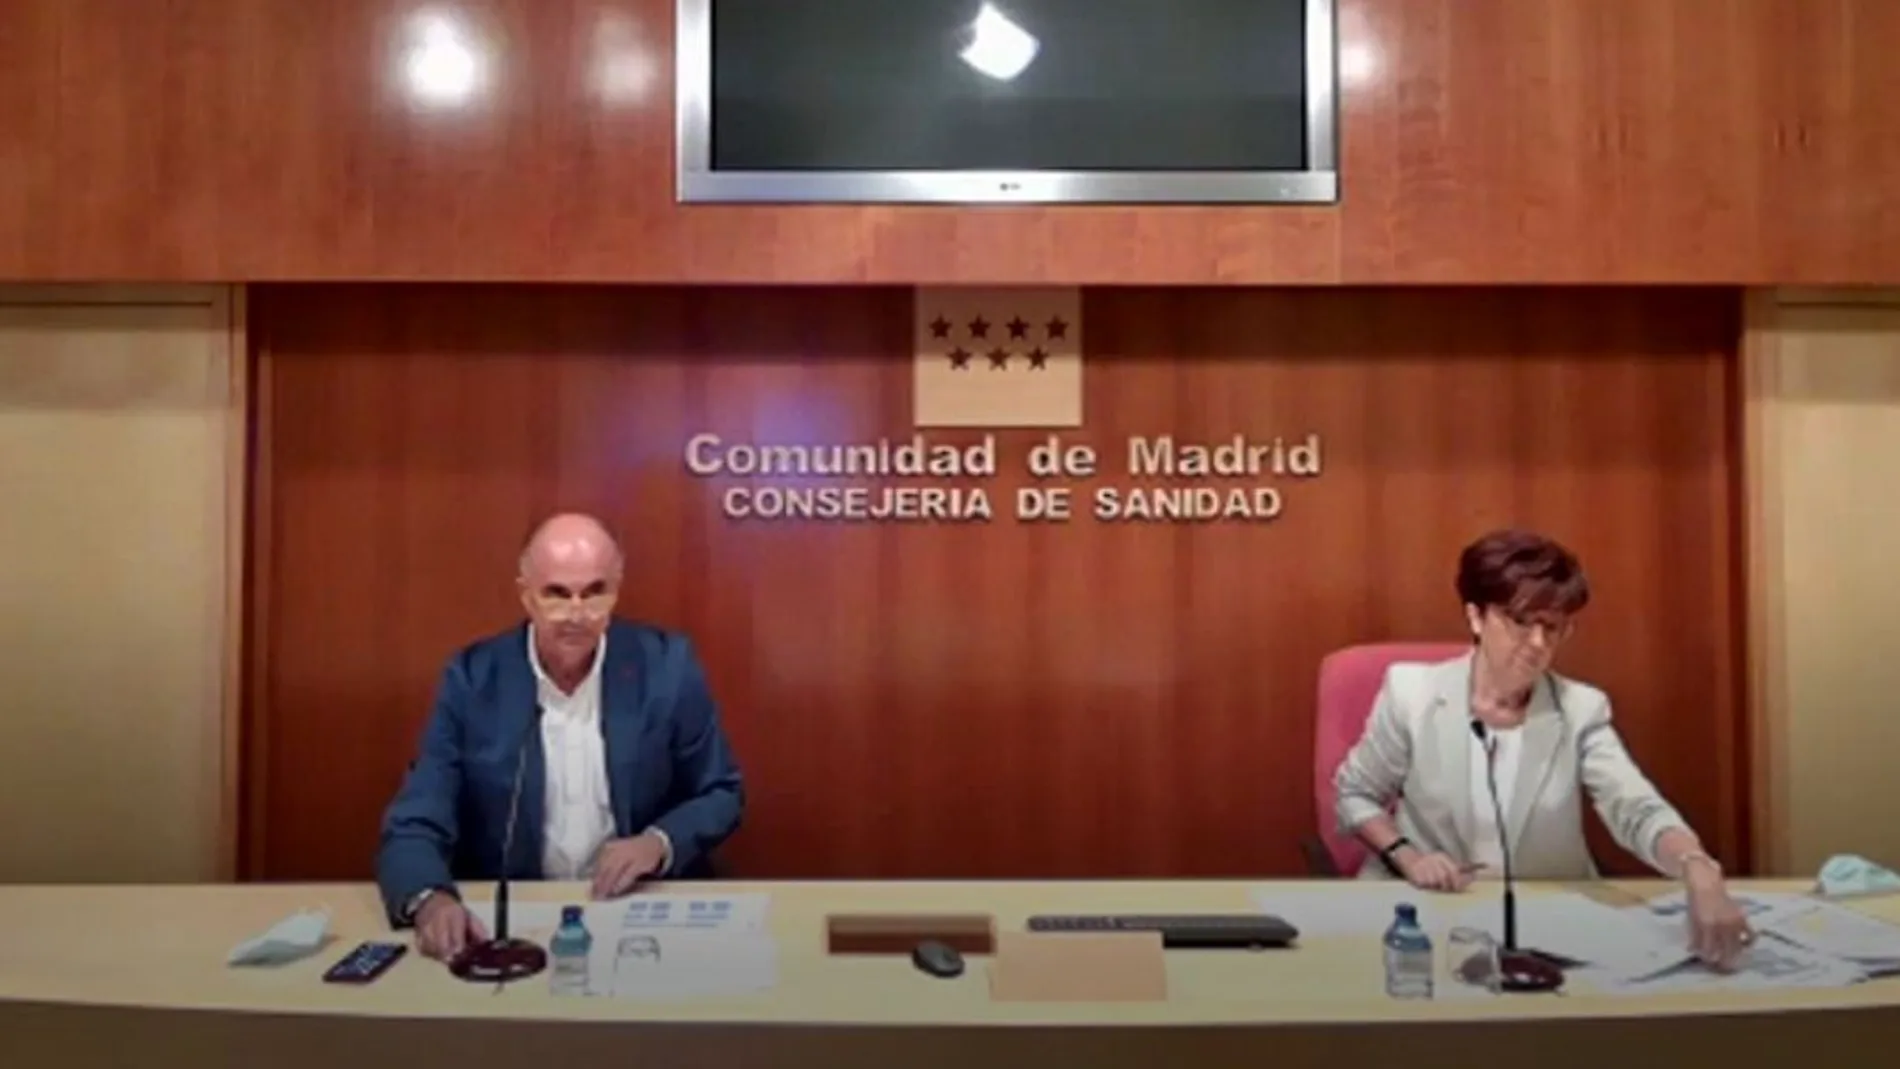 Rueda de prensa de Antonio Zapatero y Elena Andradas. Consejería de Sanidad de Madrid